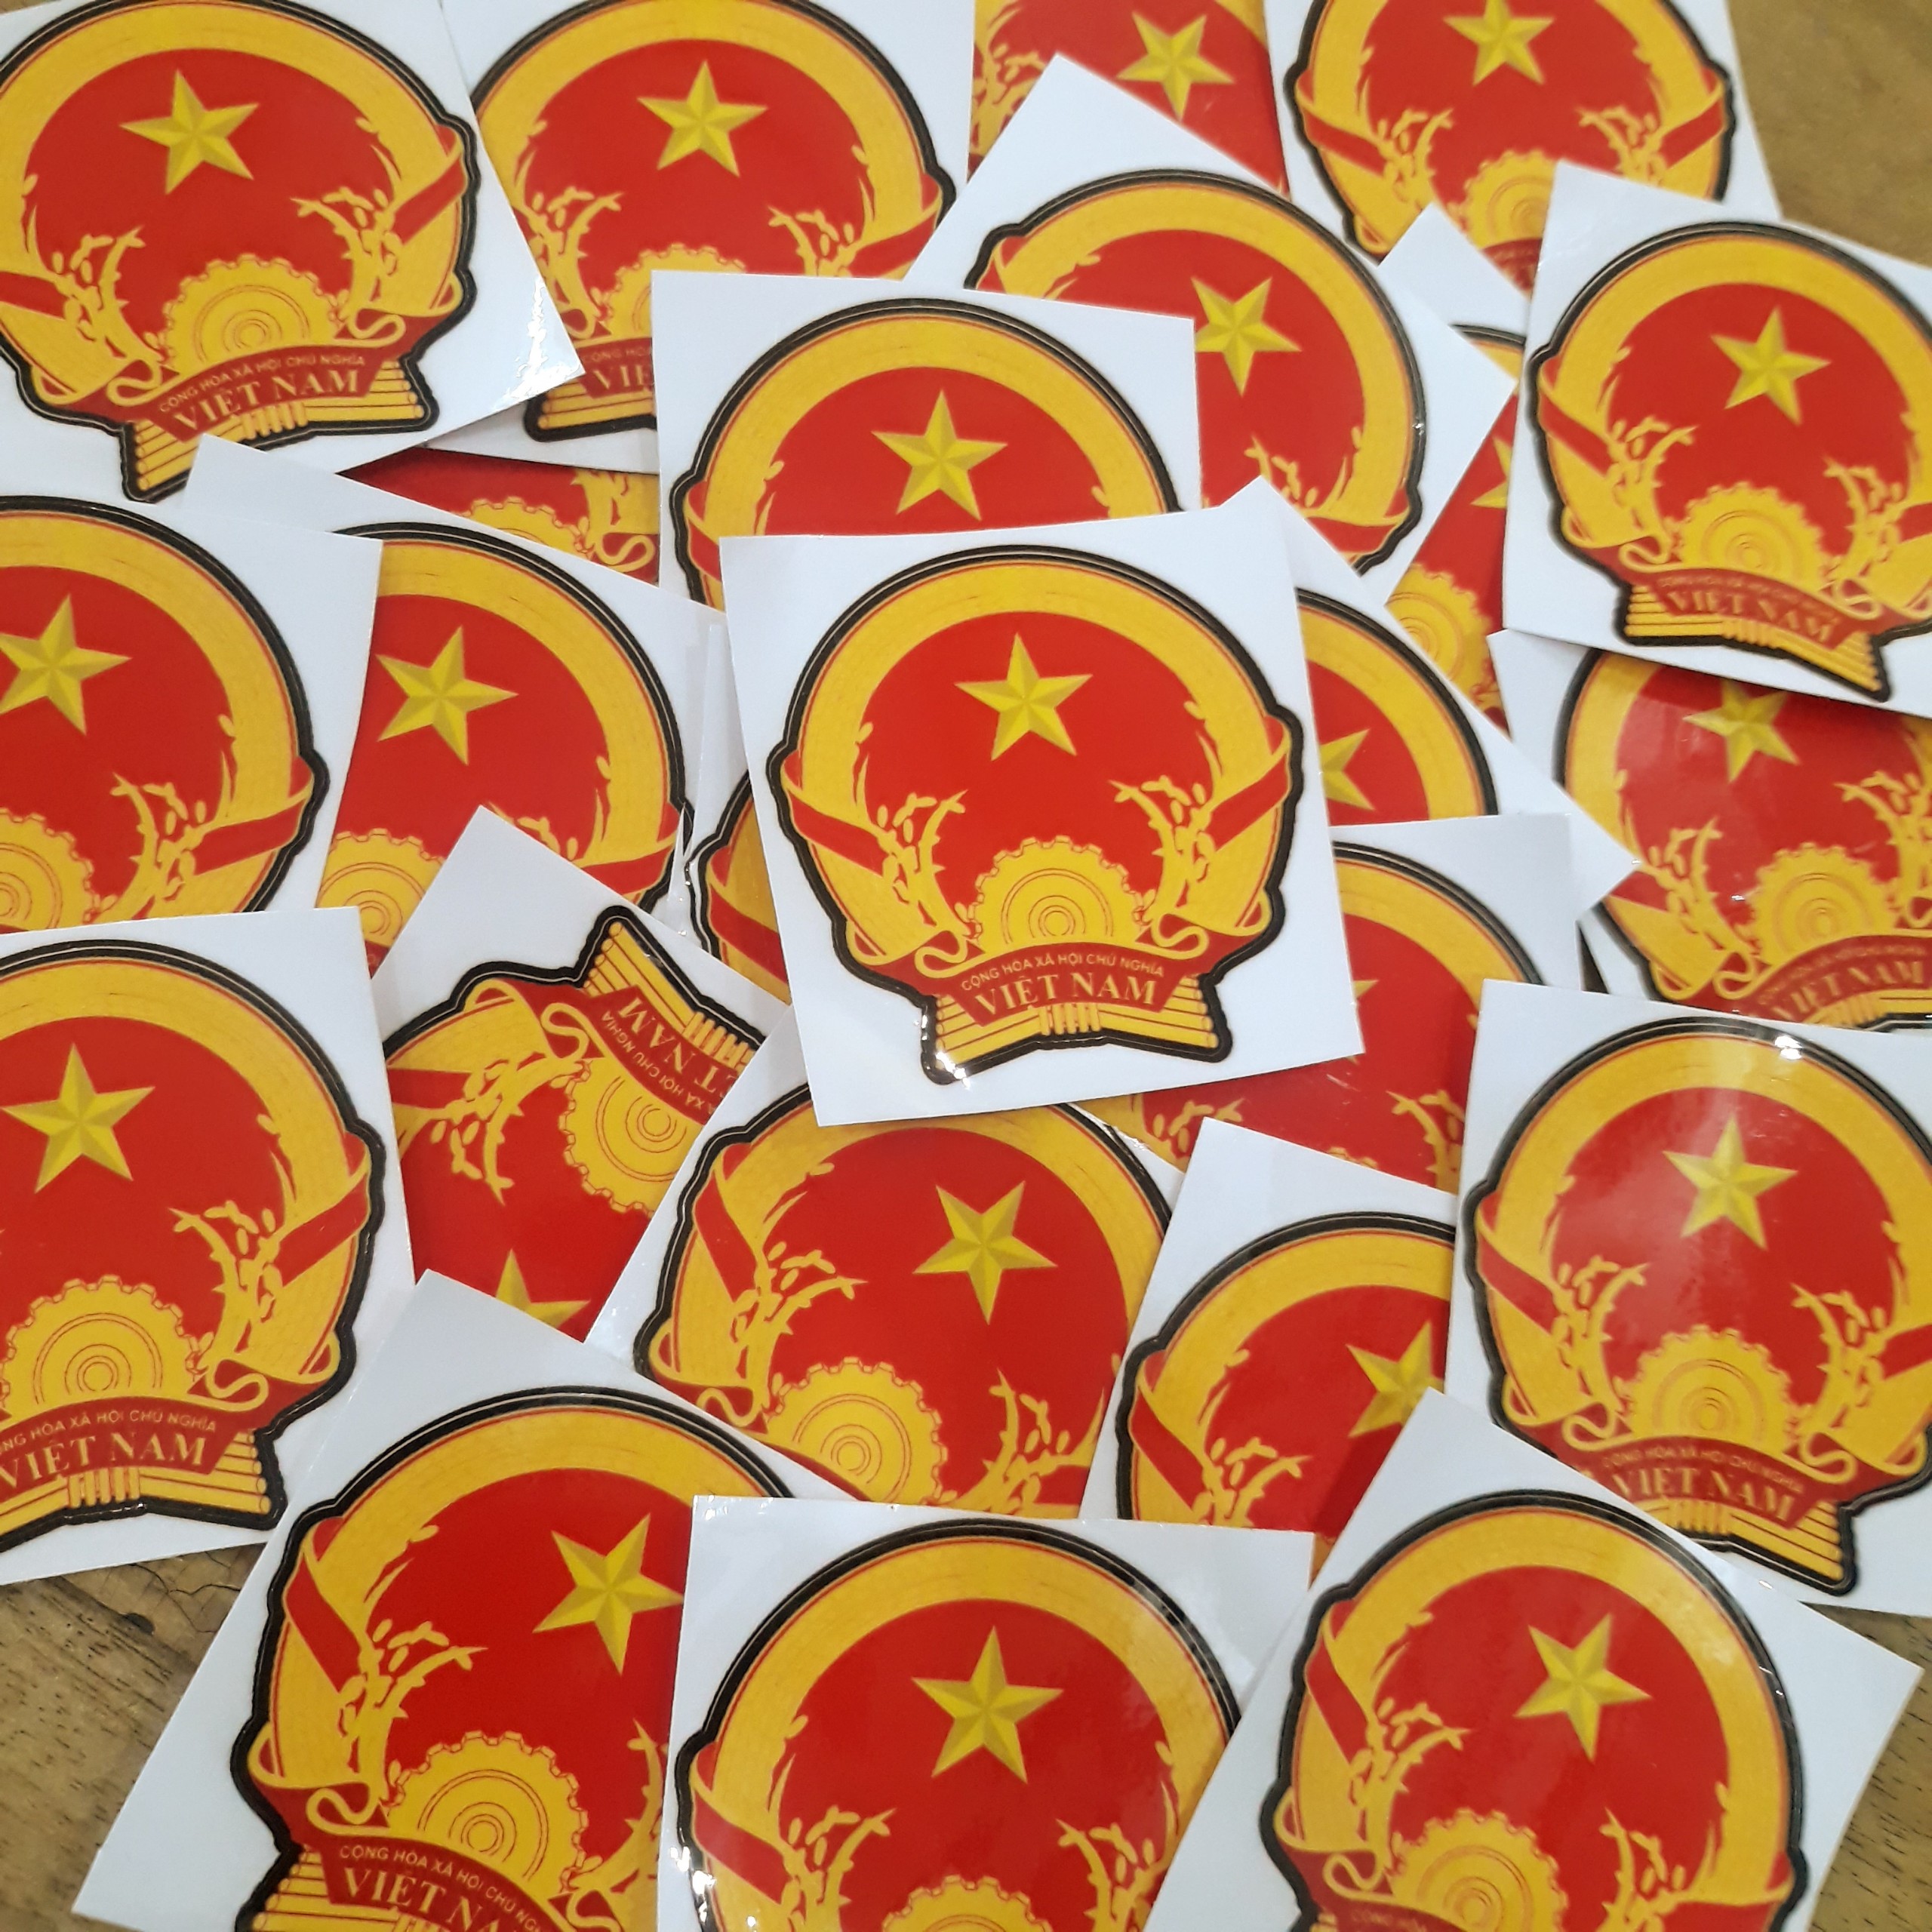 Sticker Quốc Huy, Tem Logo Đảng, Tem Quốc Dân Dán Laptop, Điện Thoại